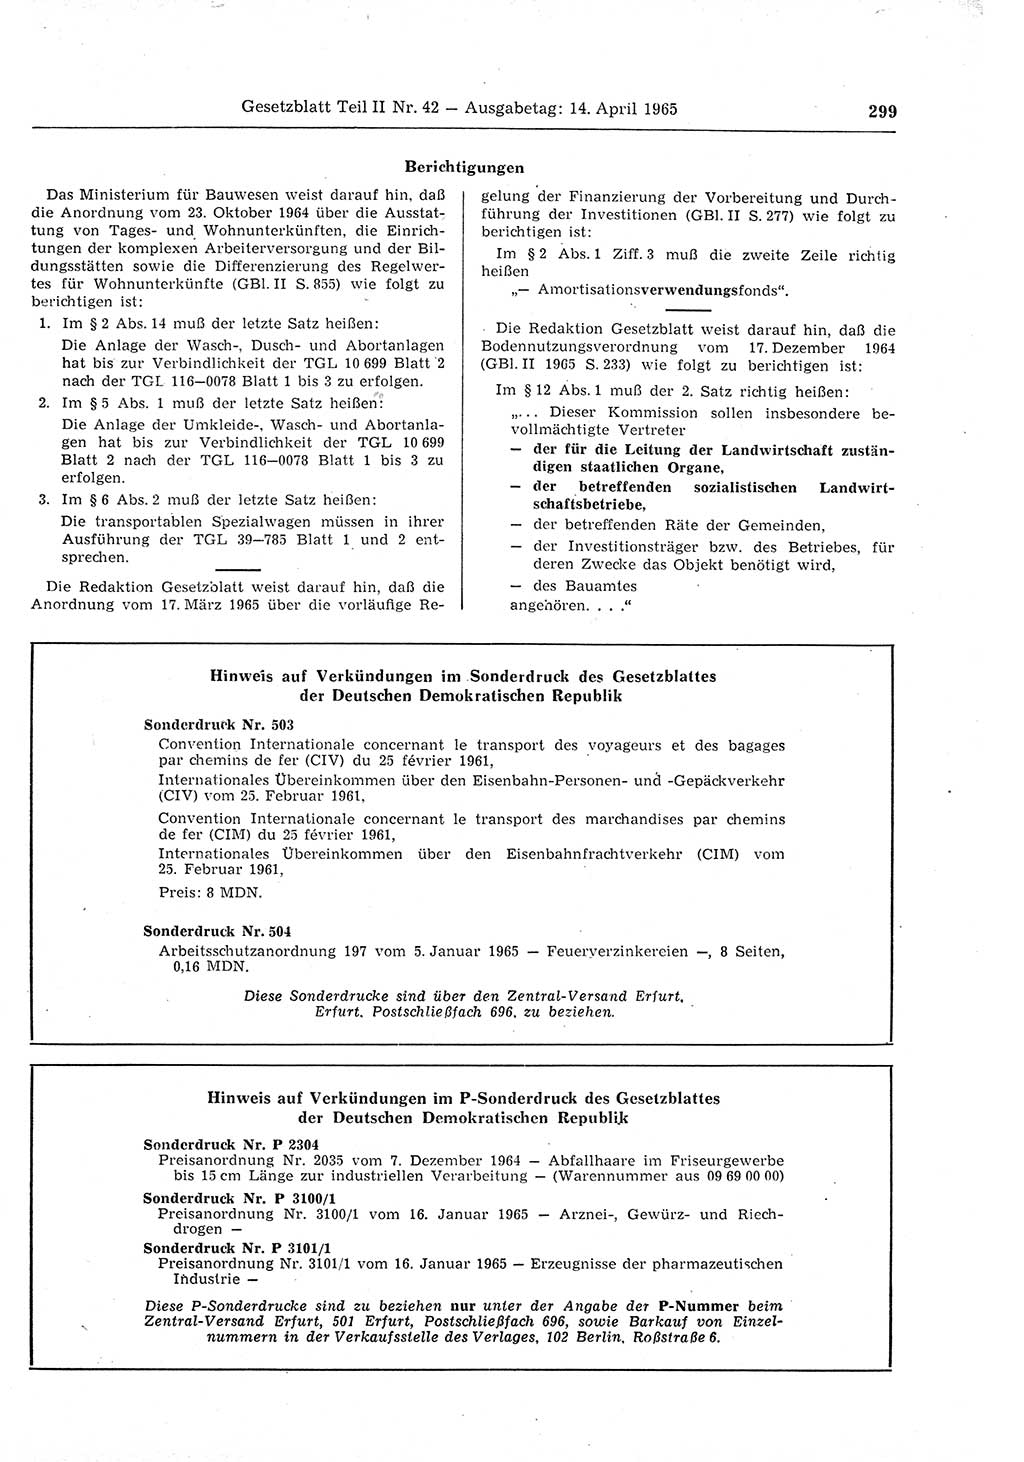 Gesetzblatt (GBl.) der Deutschen Demokratischen Republik (DDR) Teil ⅠⅠ 1965, Seite 299 (GBl. DDR ⅠⅠ 1965, S. 299)